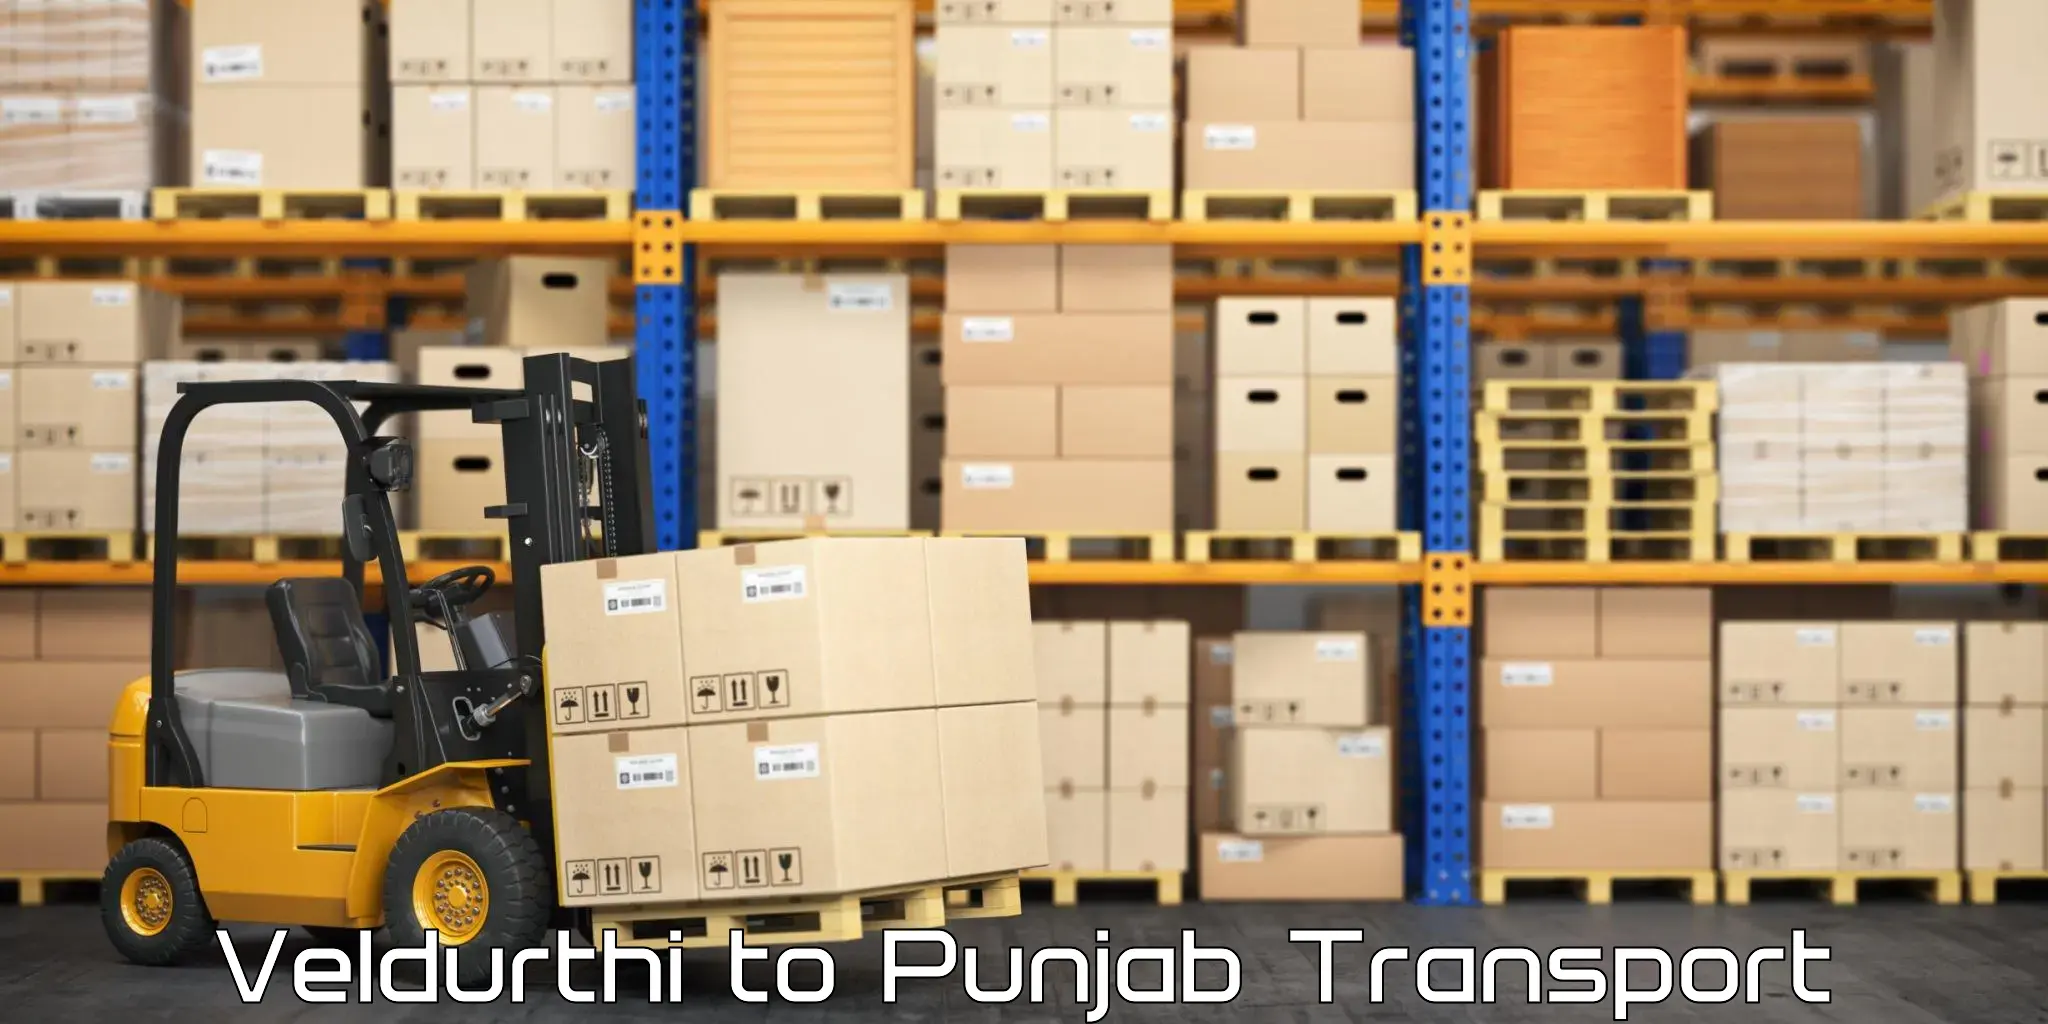 Container transport service Veldurthi to Rupnagar